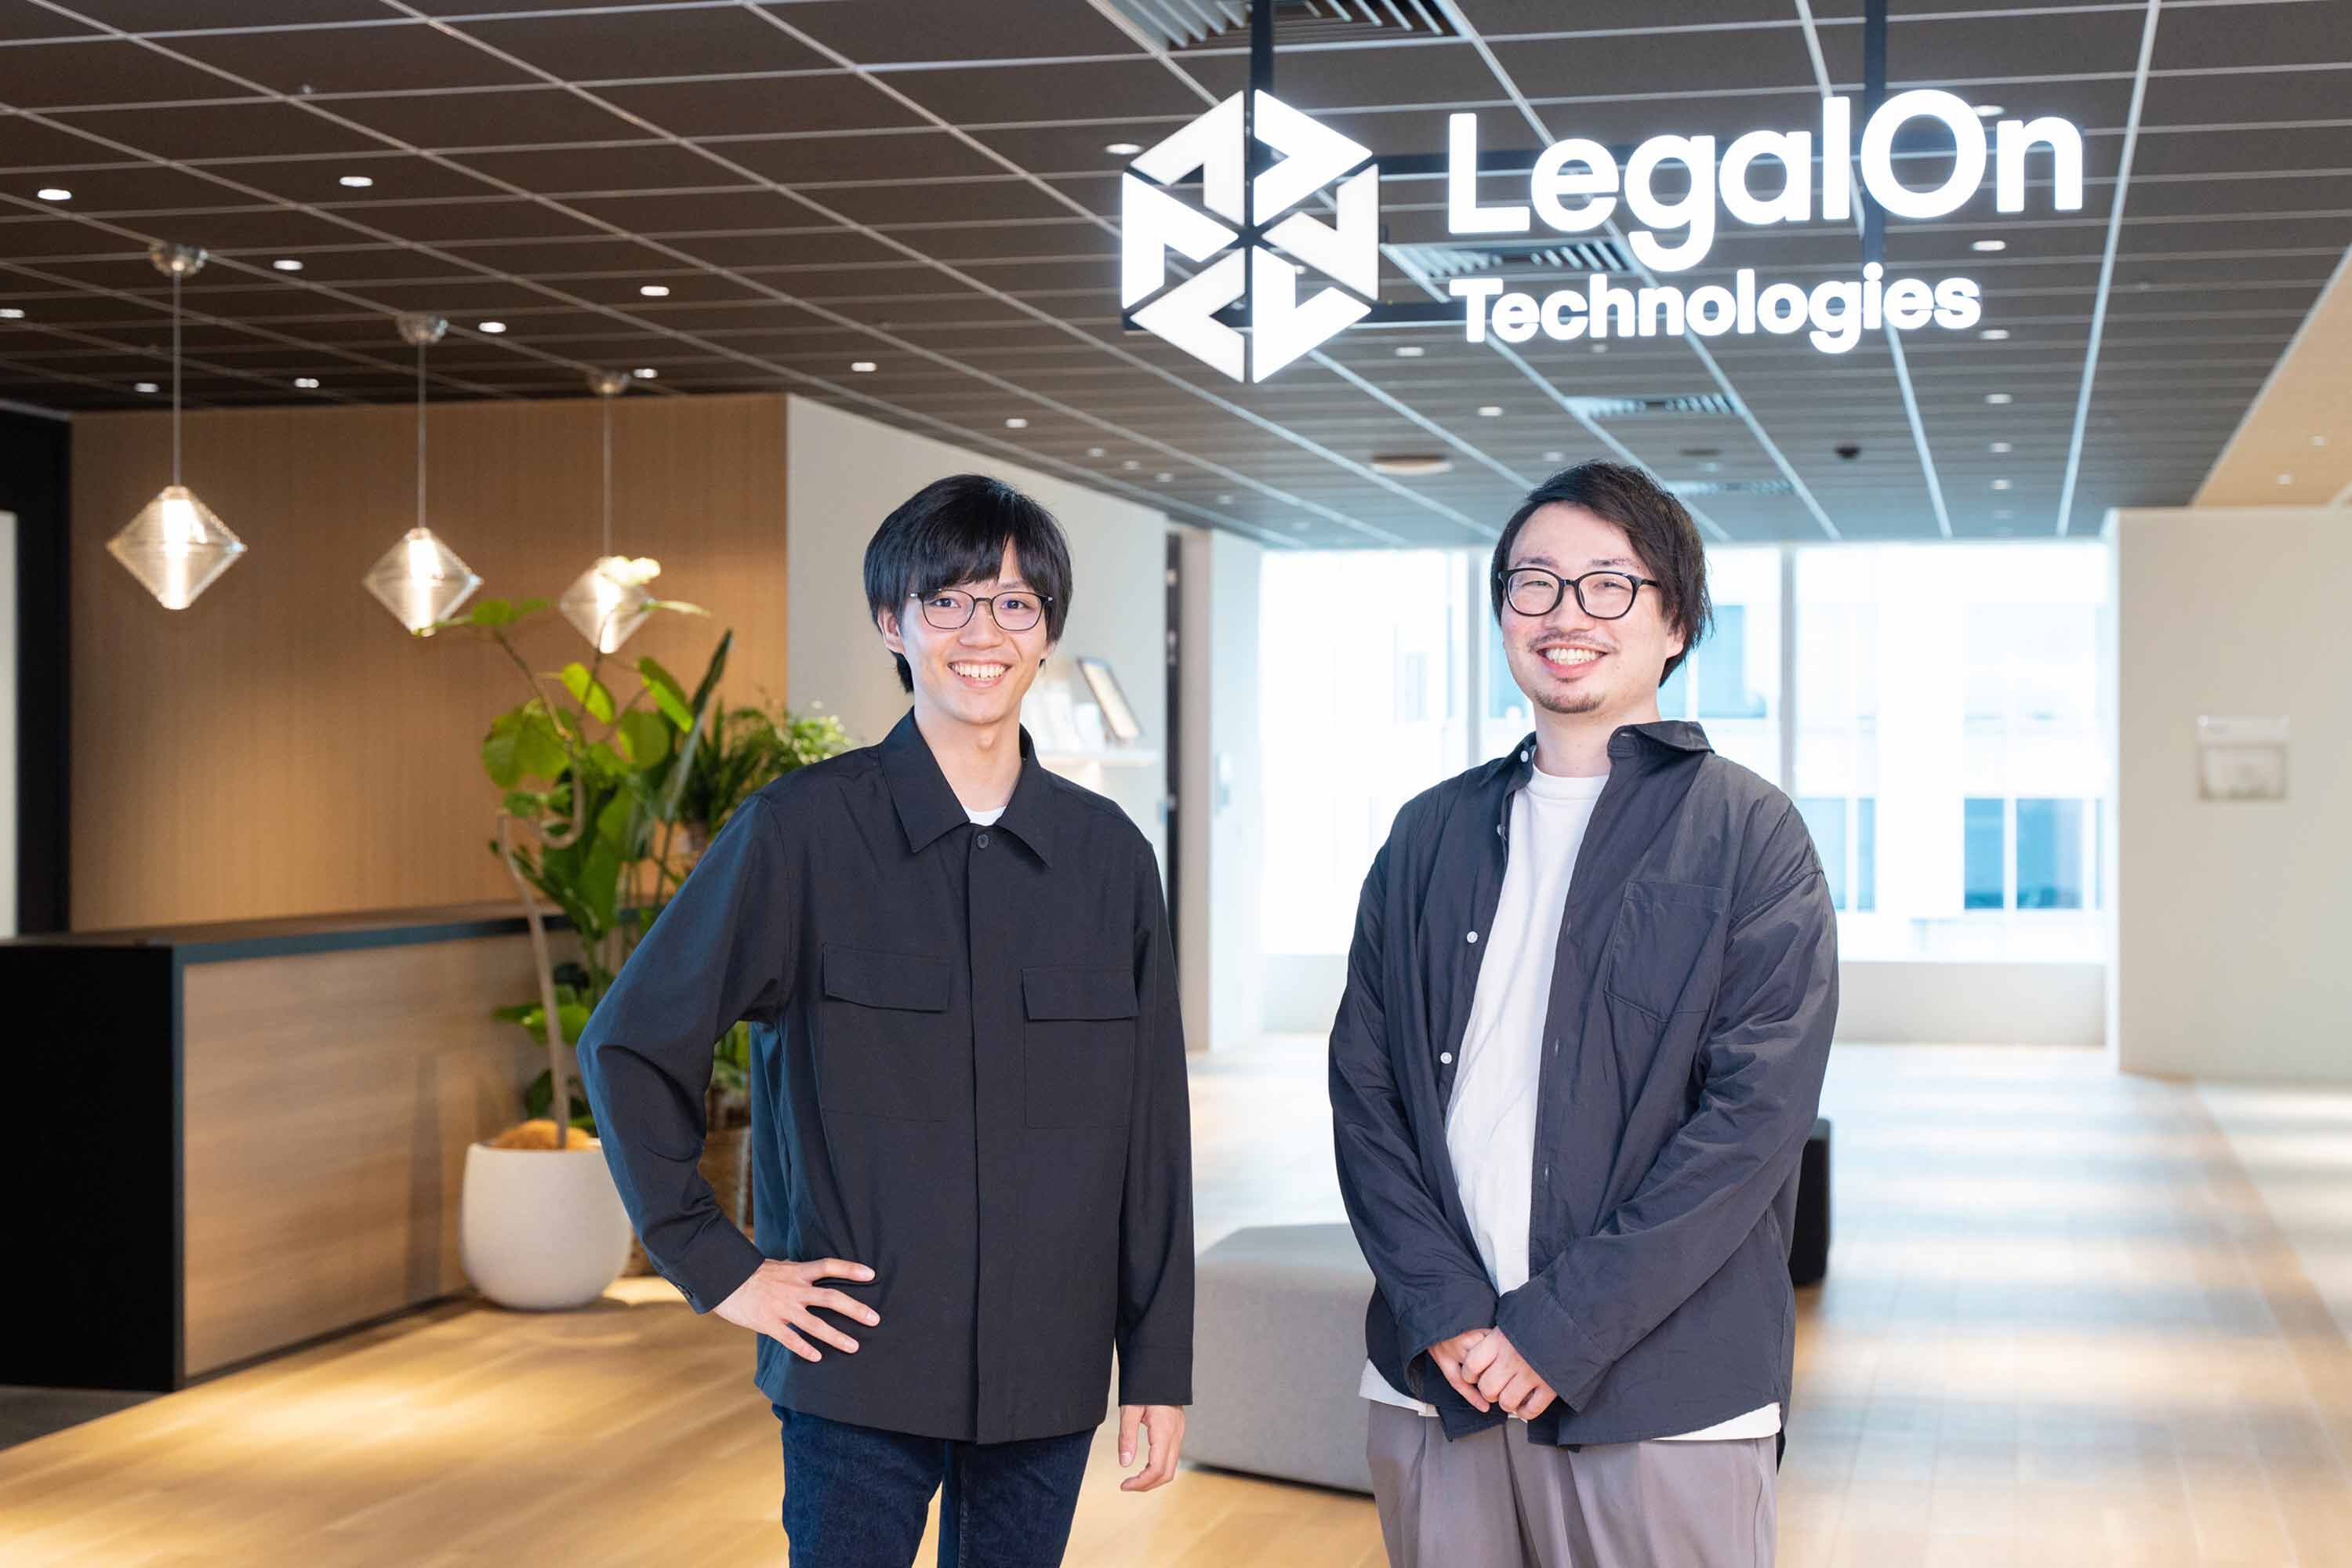 株式会社LegalOn Technologies